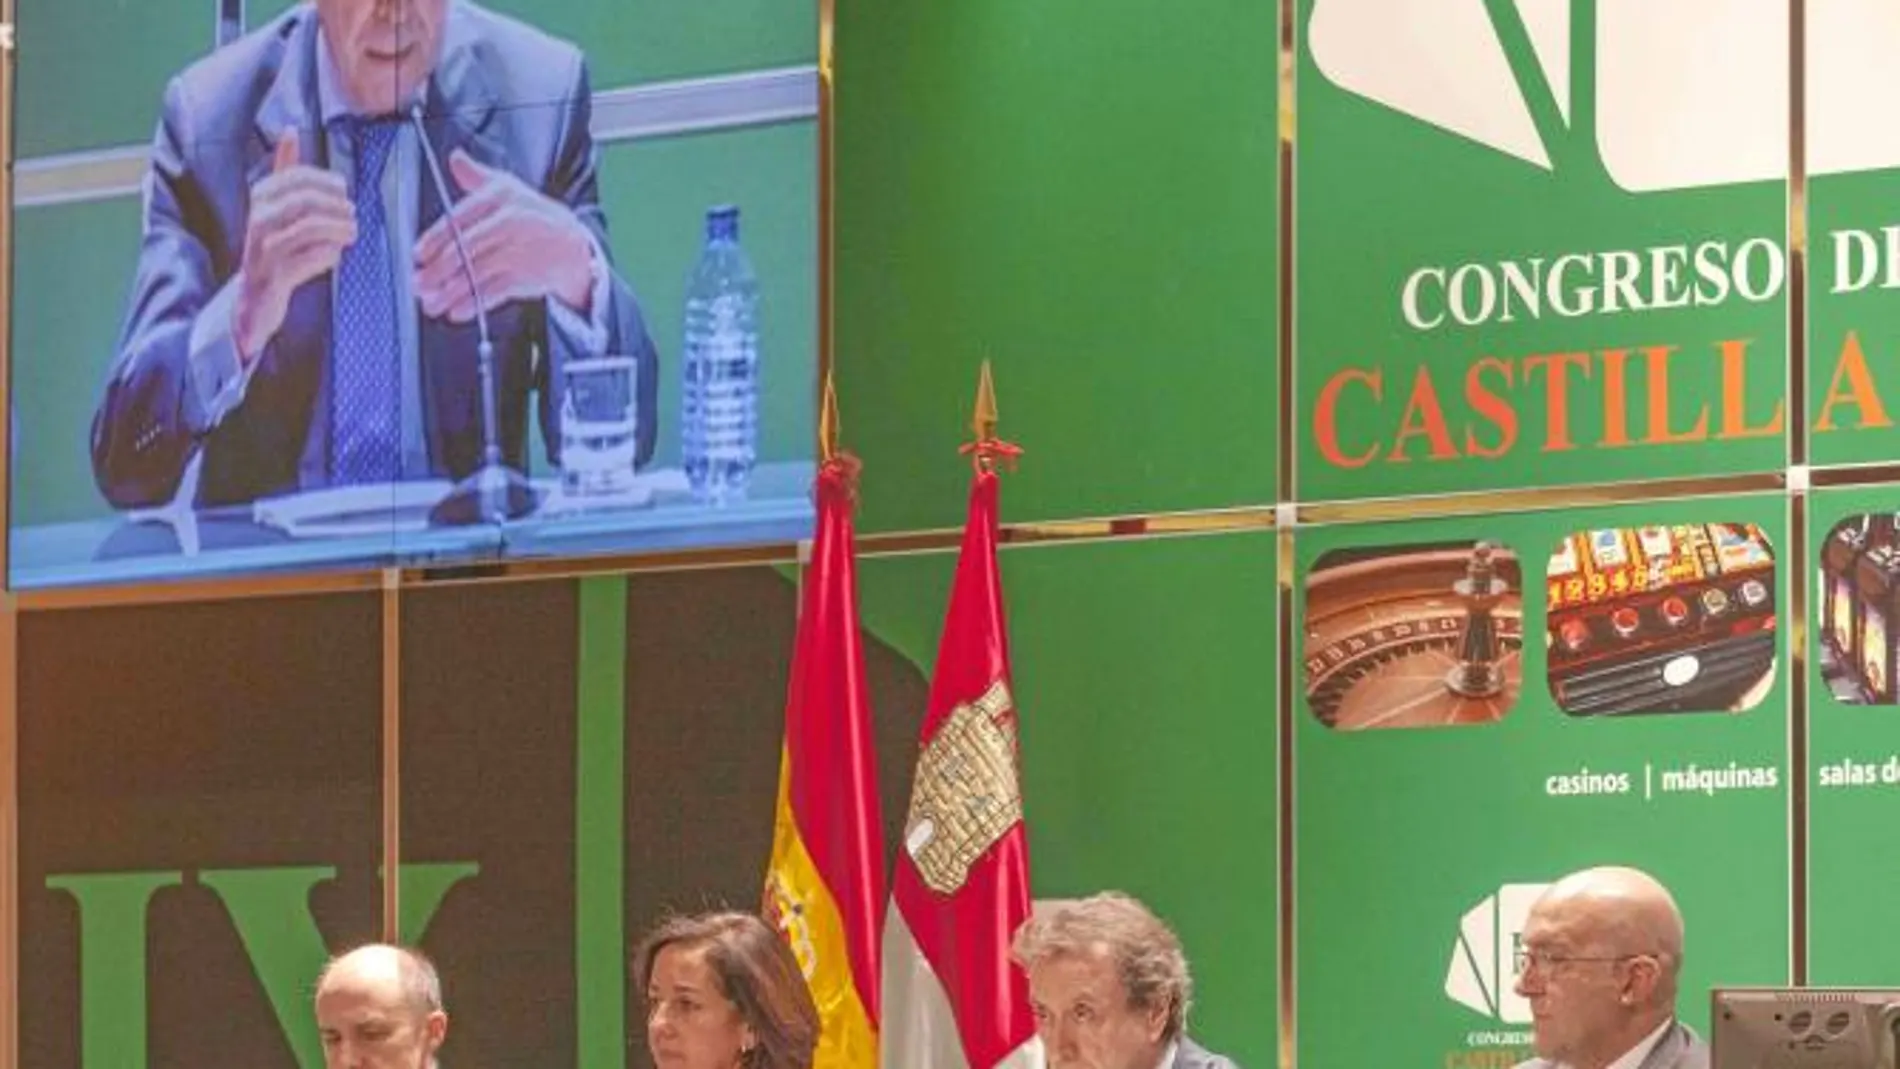 De Santiago-Juárez inaugura el IX Congreso del Juego de Castilla y León. Junto a él, Mercedes Cantalapiedra, Jesús Julio Carnero y Enrique Alejo